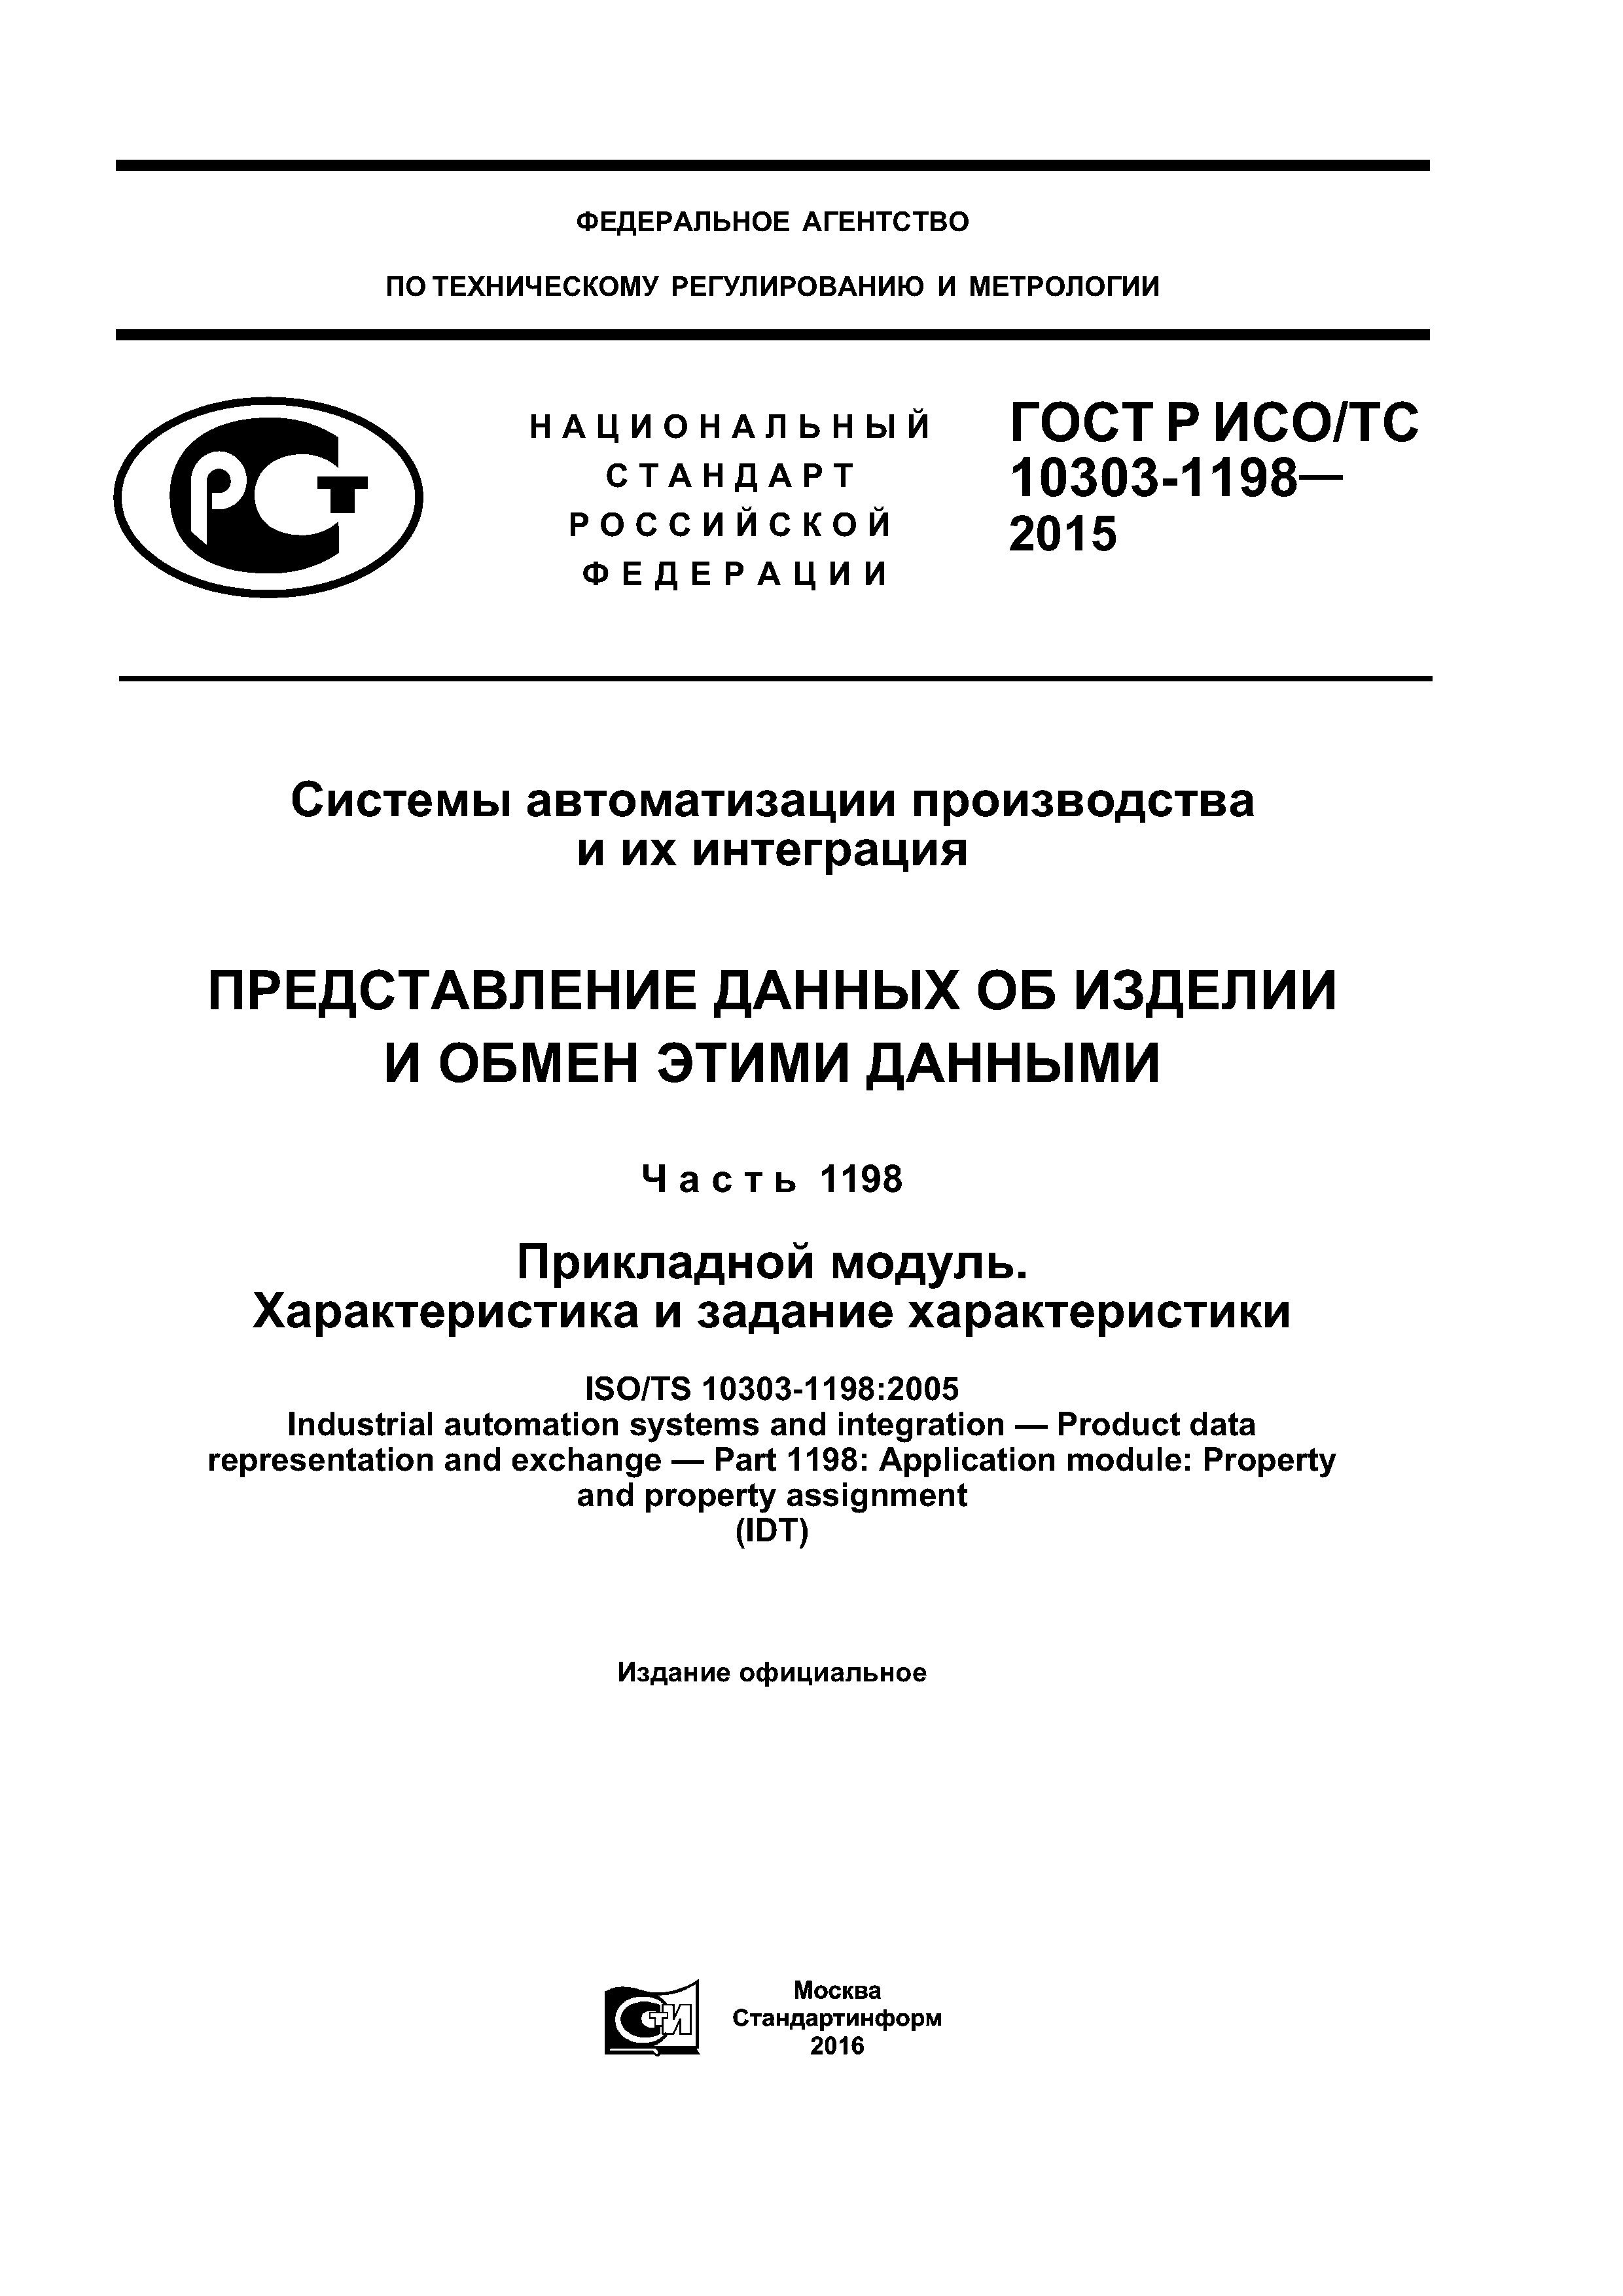 ГОСТ Р ИСО/ТС 10303-1198-2015